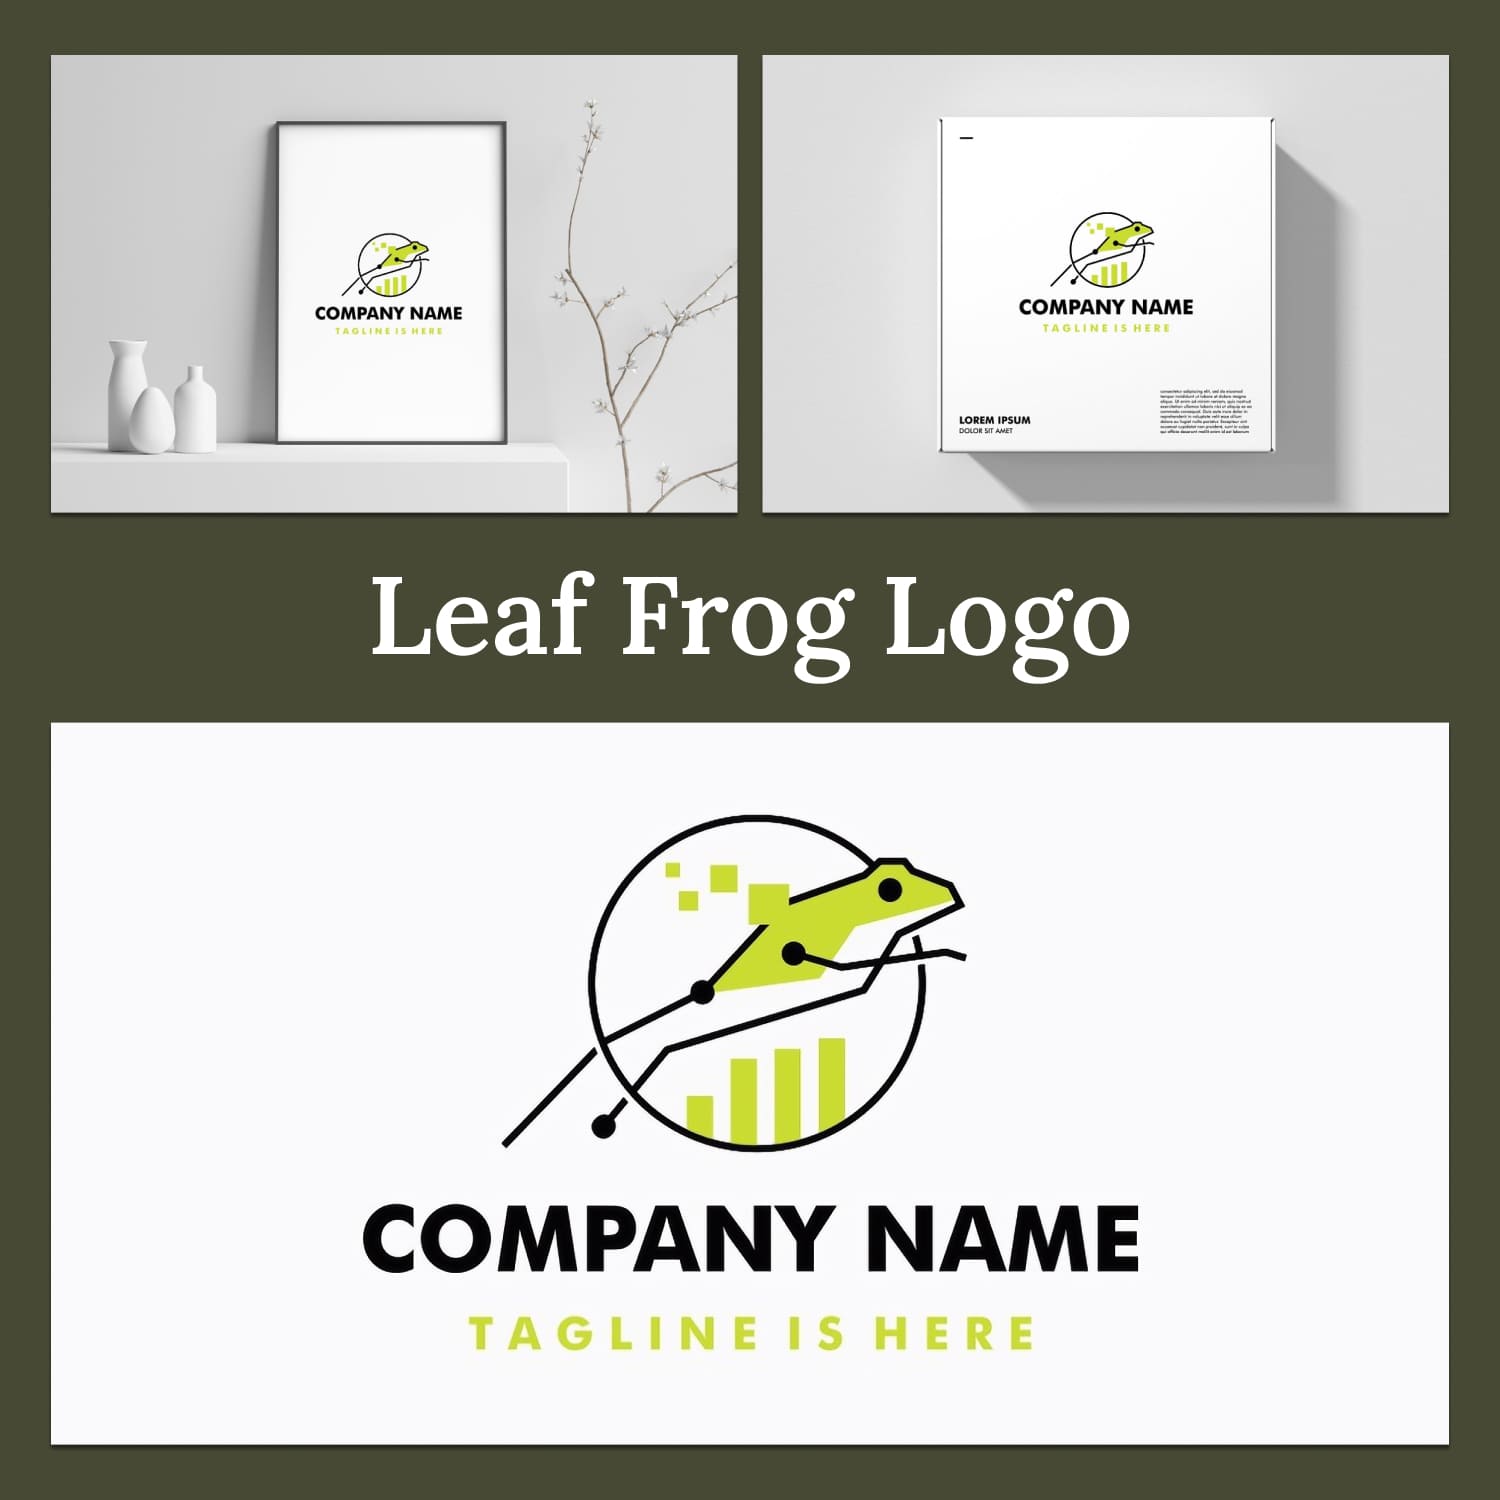 Leaf frog logo - main image preview.